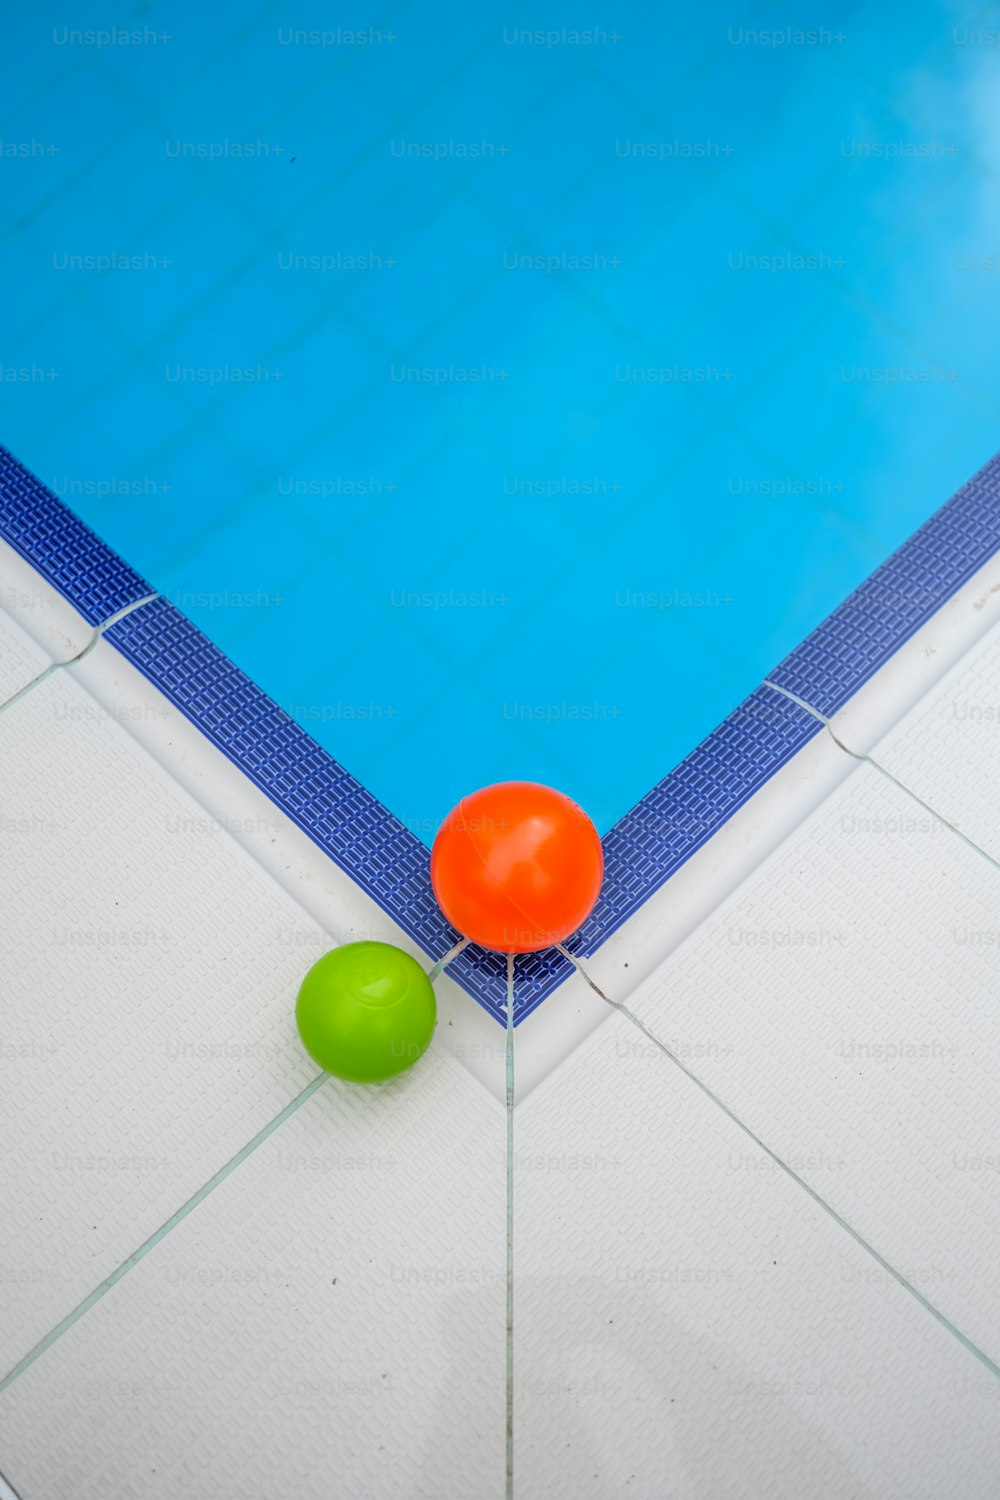 두 개의 공과 그물이있는 수영장